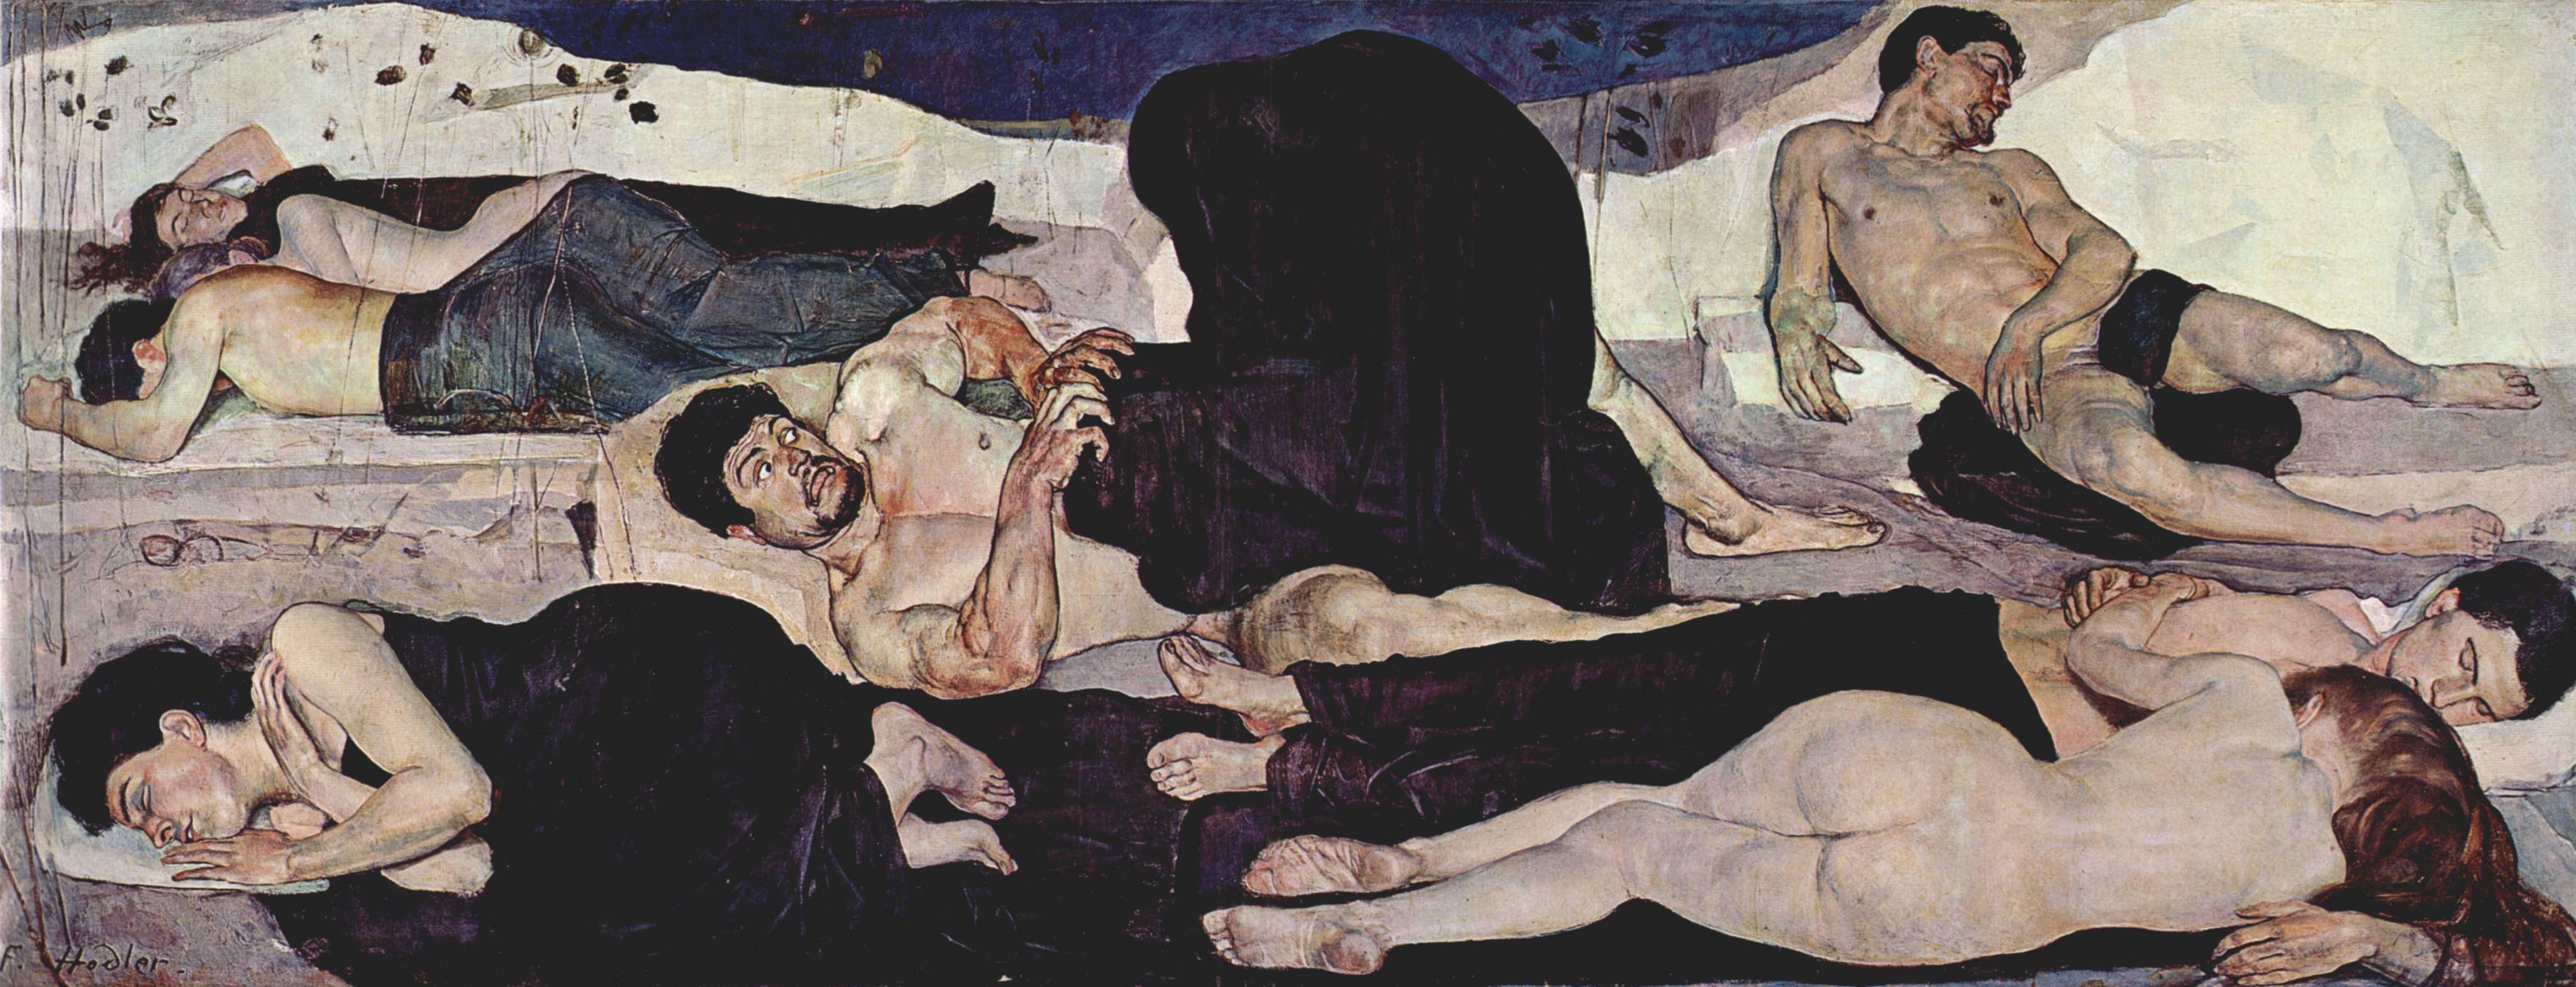 Φέρντιναντ Χόντλερ (Ferdinand Hodler, Βέρνη, 14 Μαρτίου 1853 - Γενεύη, 19 Μαΐου 1918). Η Νύχτα,1890, Βέρνη, Kunstmuseum.